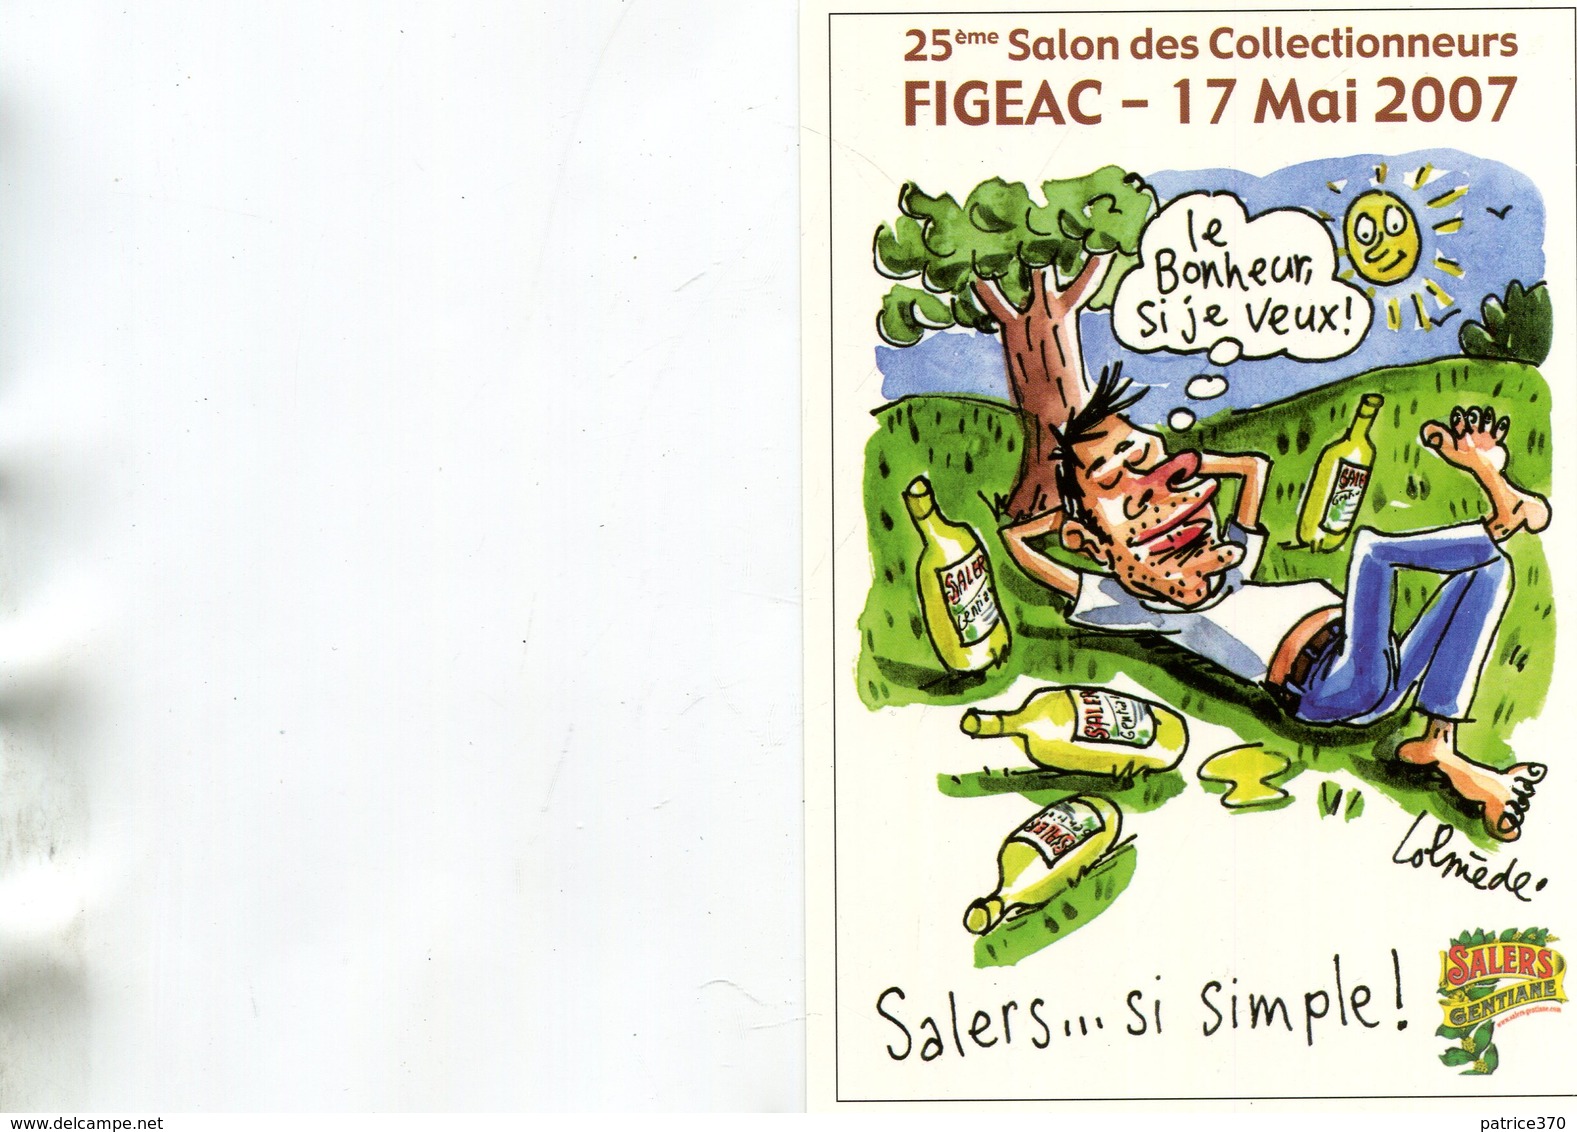 FIGEAC - 25ème Salon Des Collectionneurs 17 Mai 2007 Le Bonheur Si Je Veux Pub Salers Illustré Lolmède - Figeac